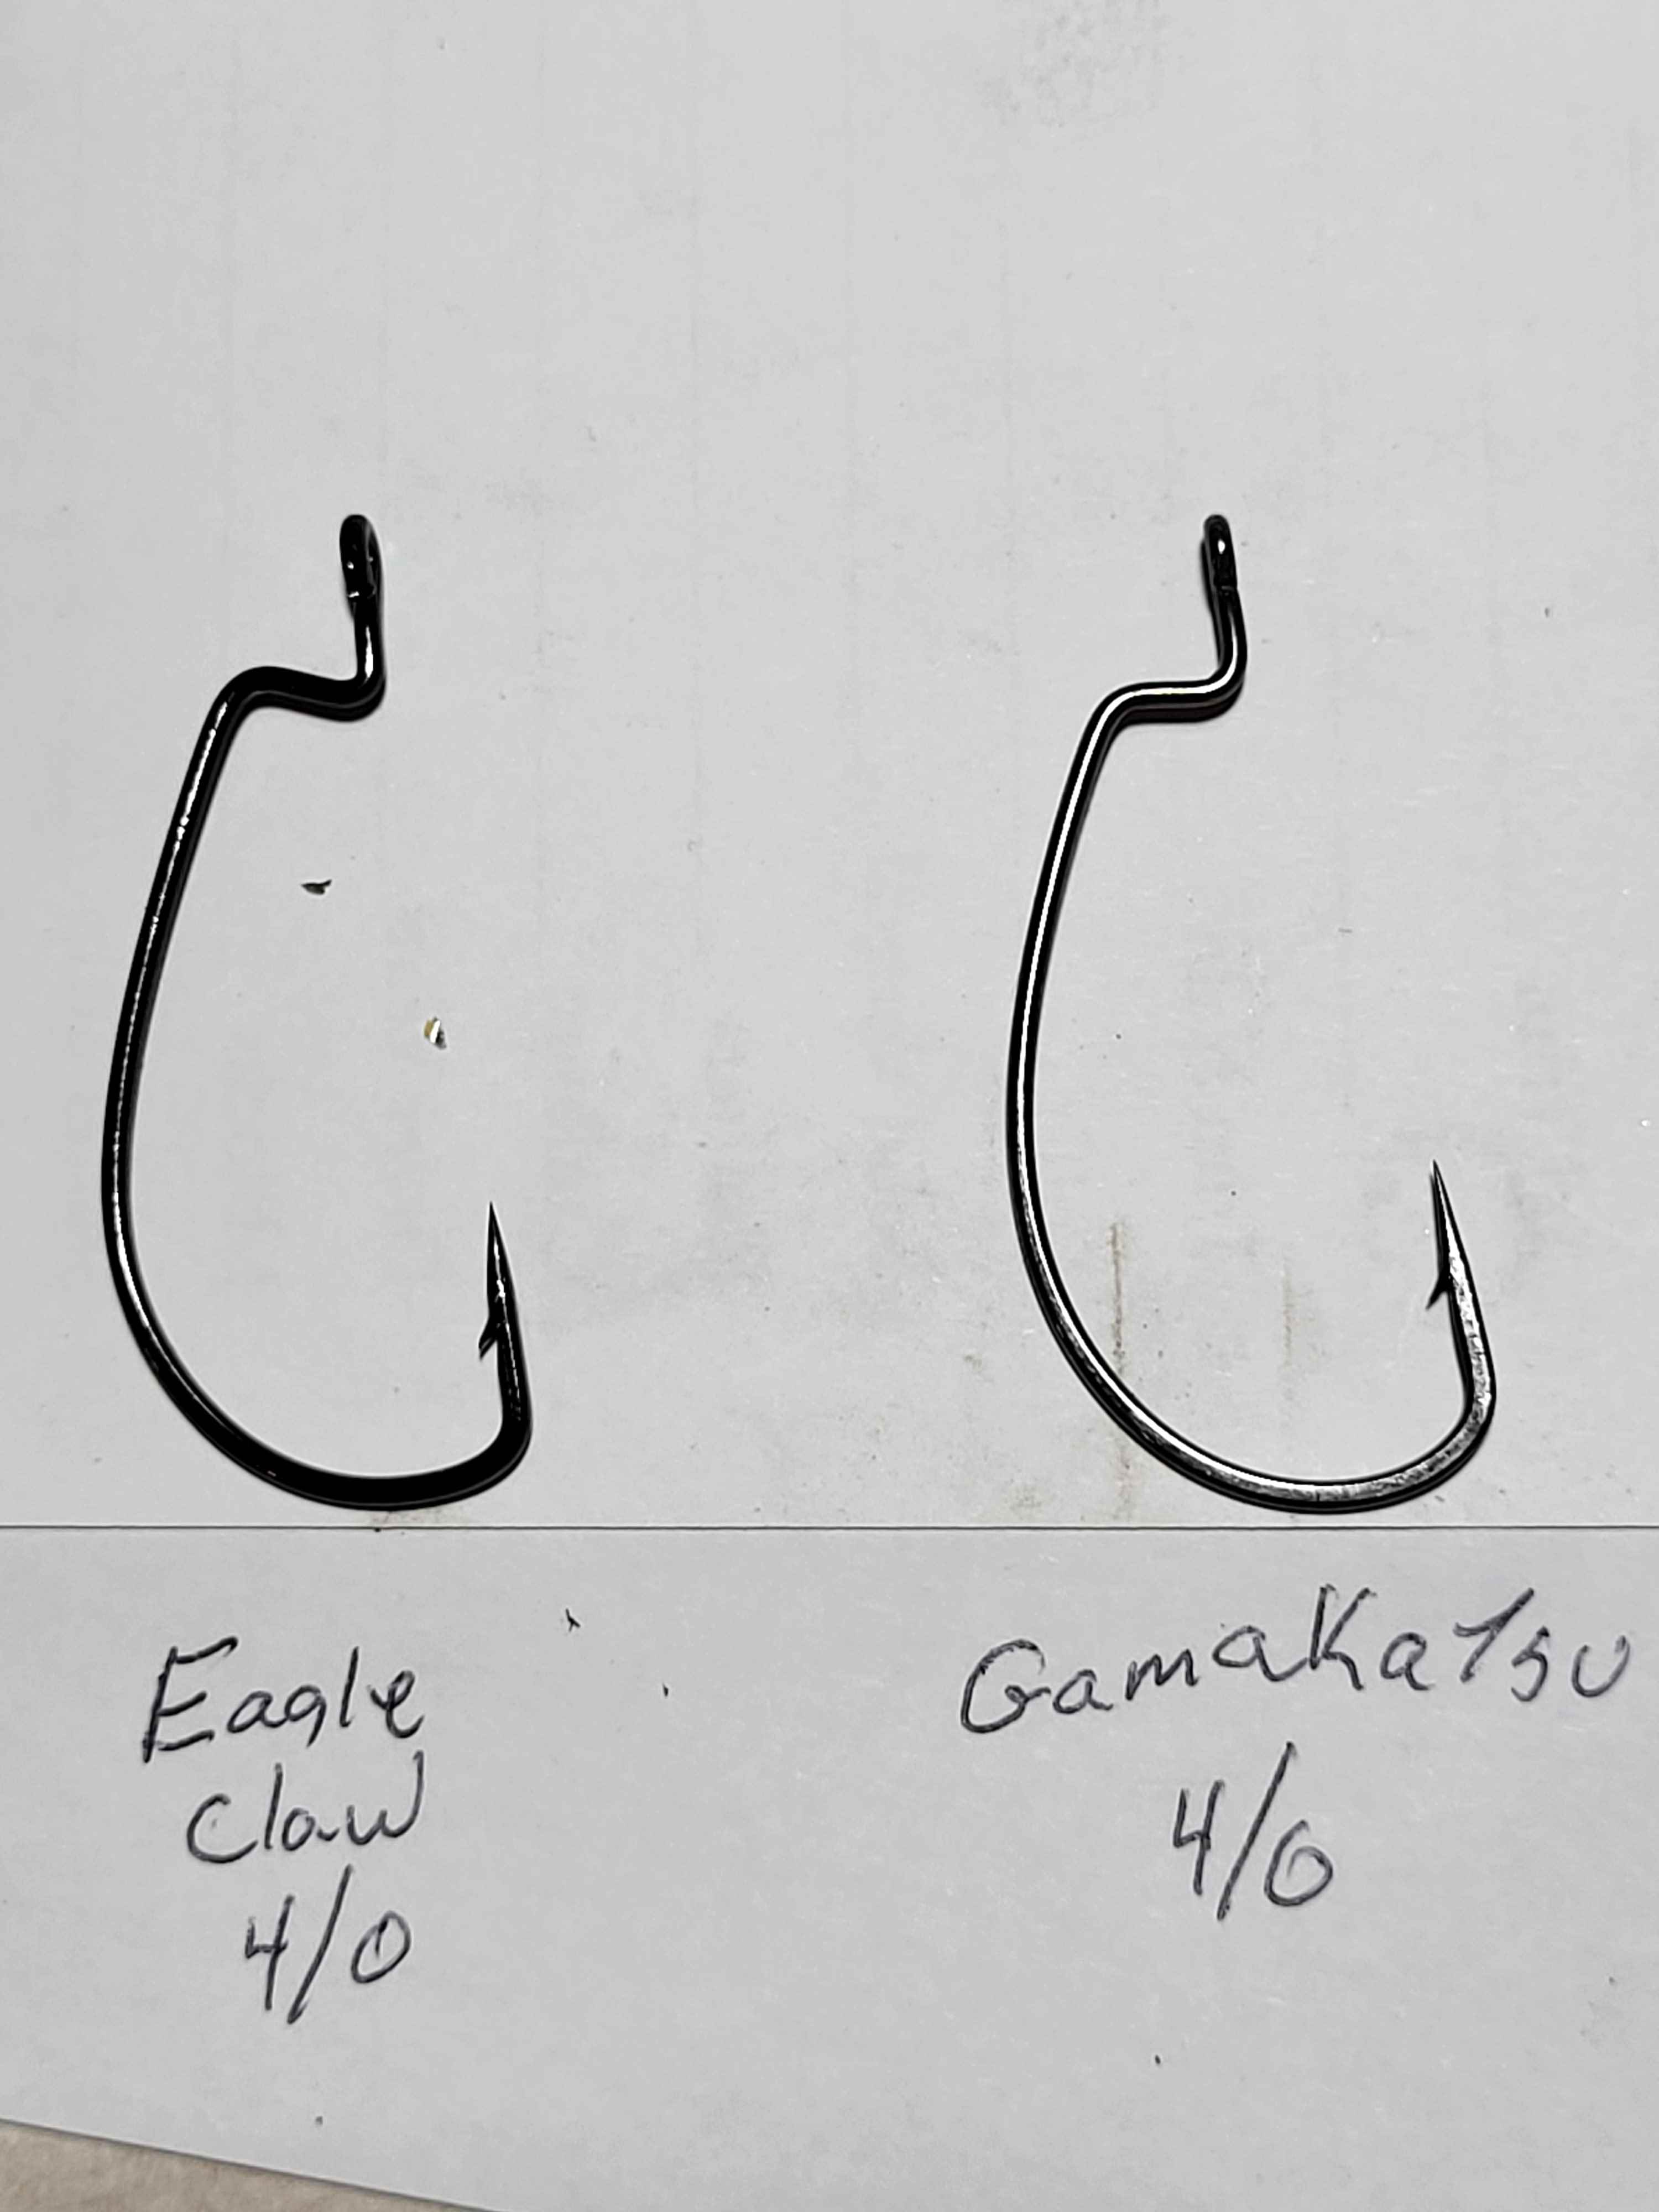 Eagle Claw Trokar EWG Worm Hook 3/0